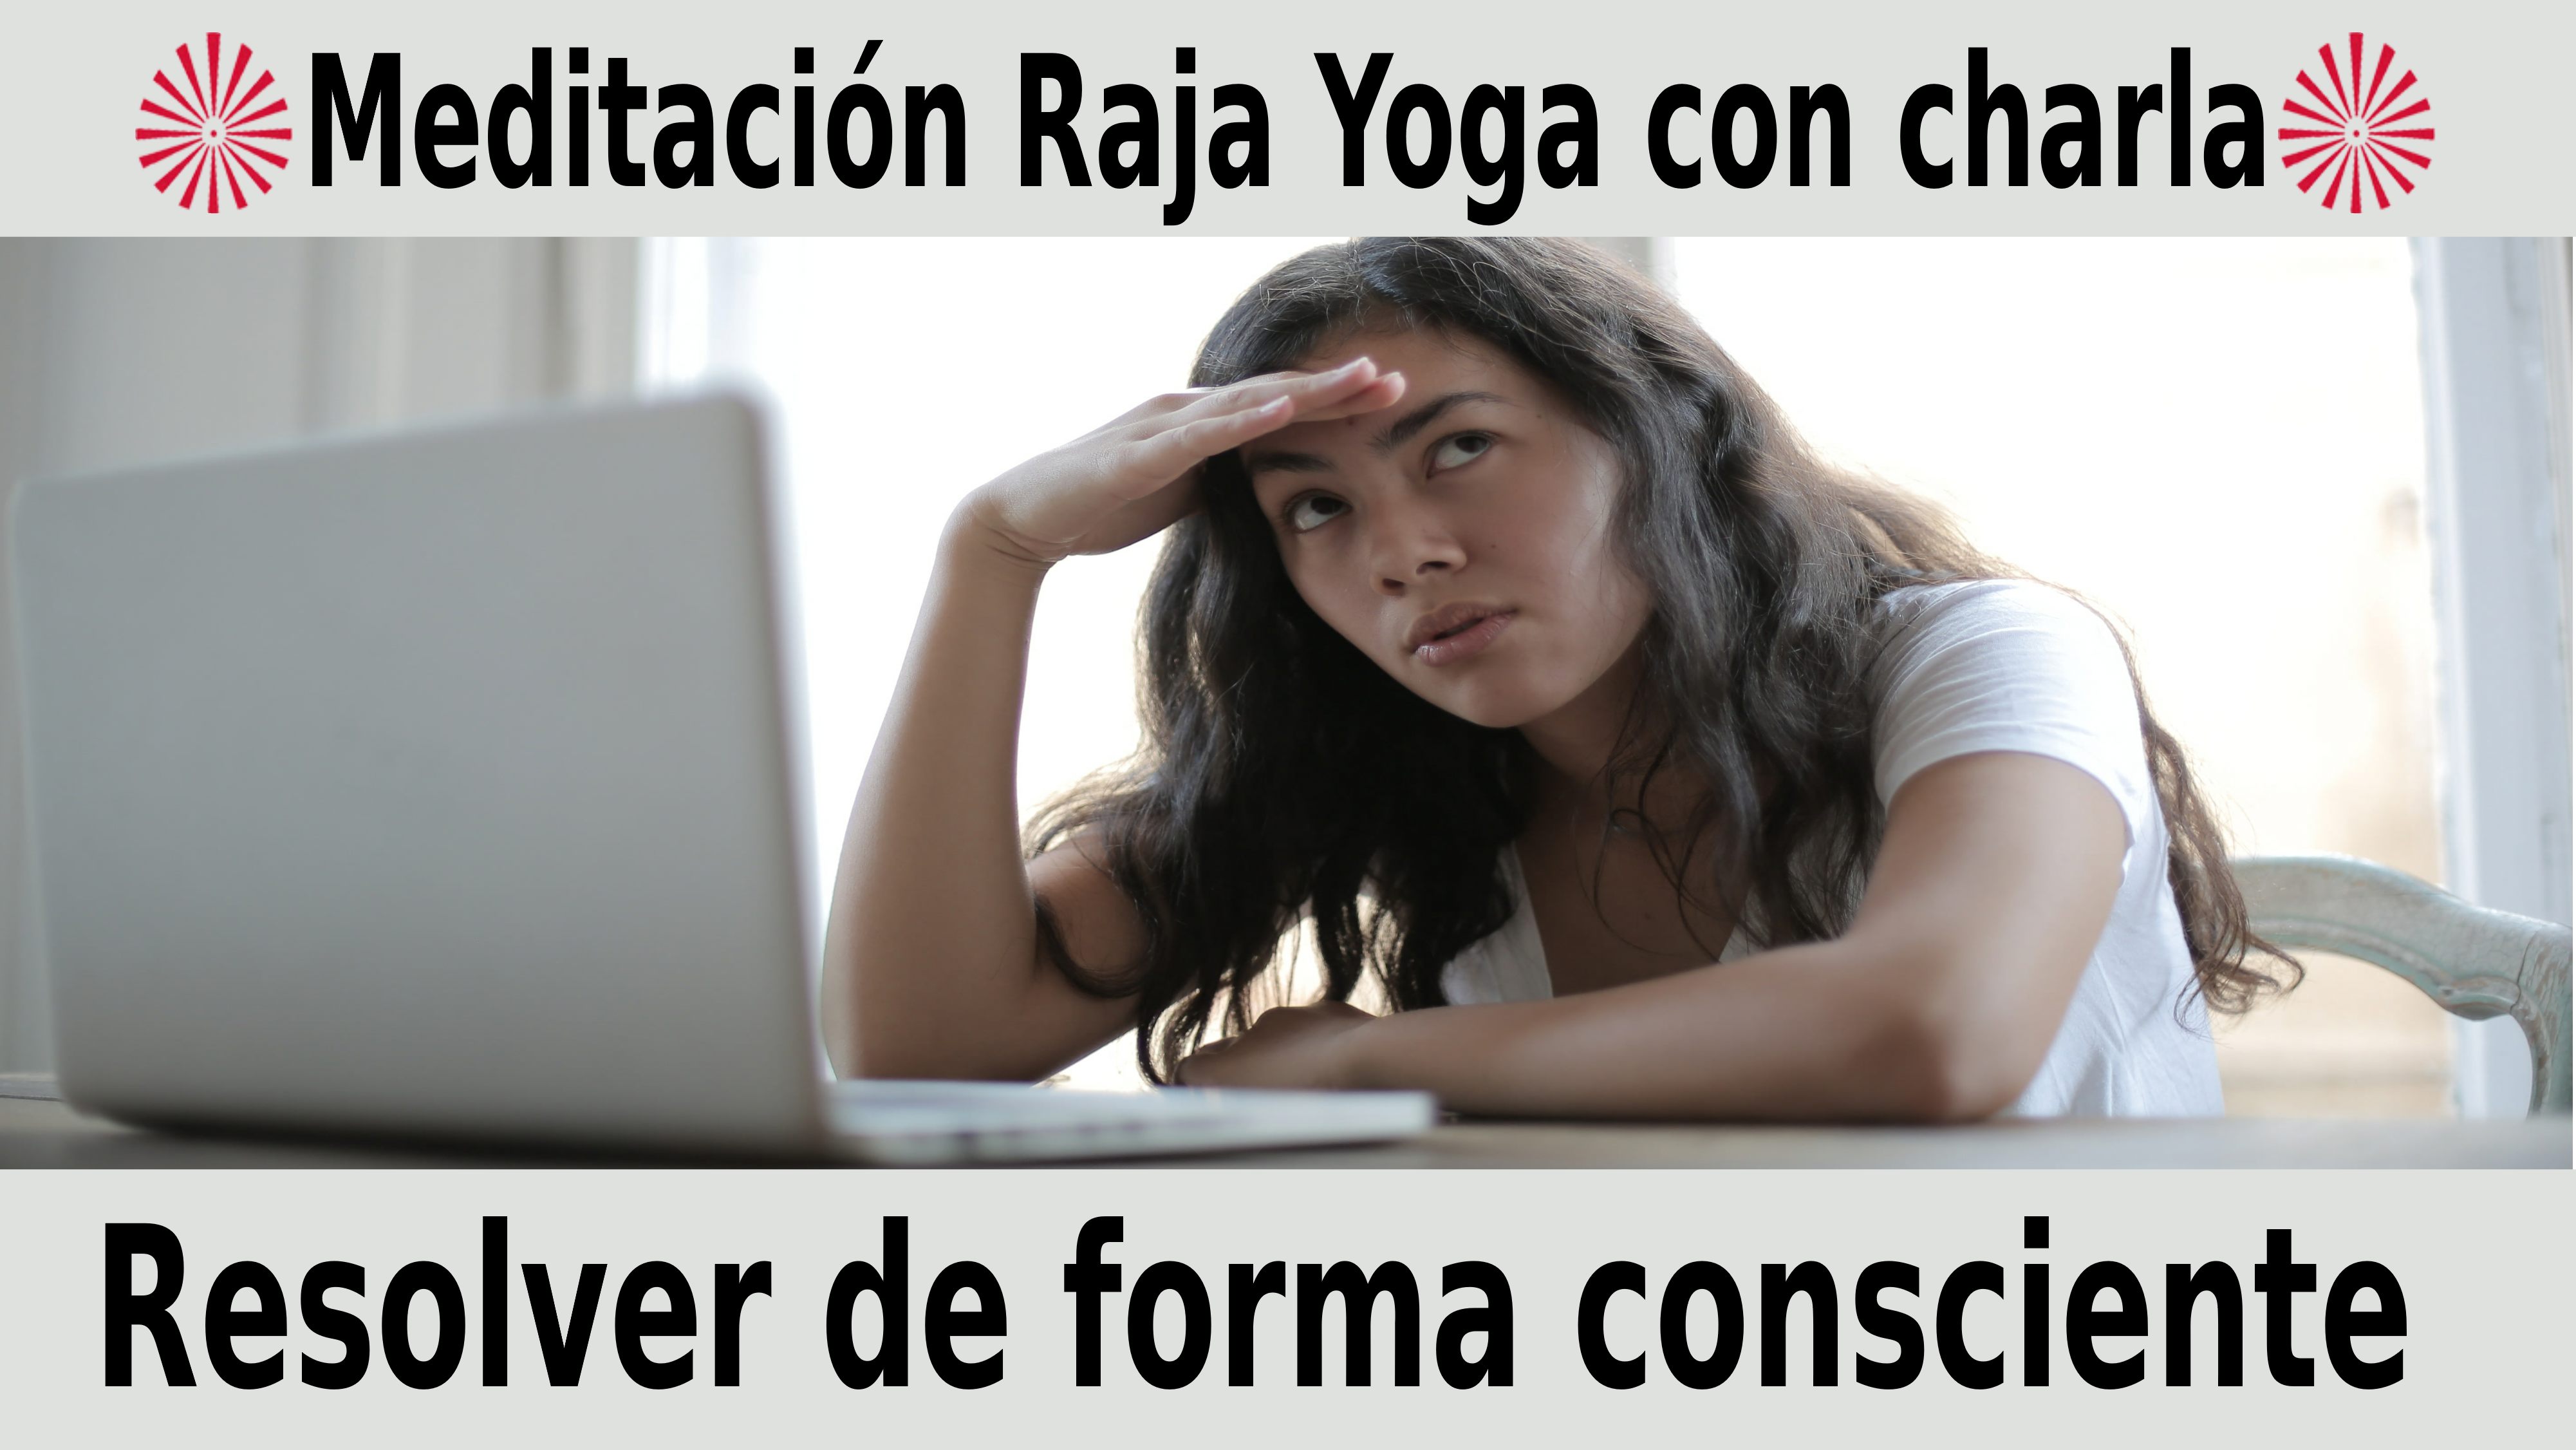 Meditación Raja Yoga con charla: Resolver de forma consciente (11 Noviembre 2020) On-line desde Canarias